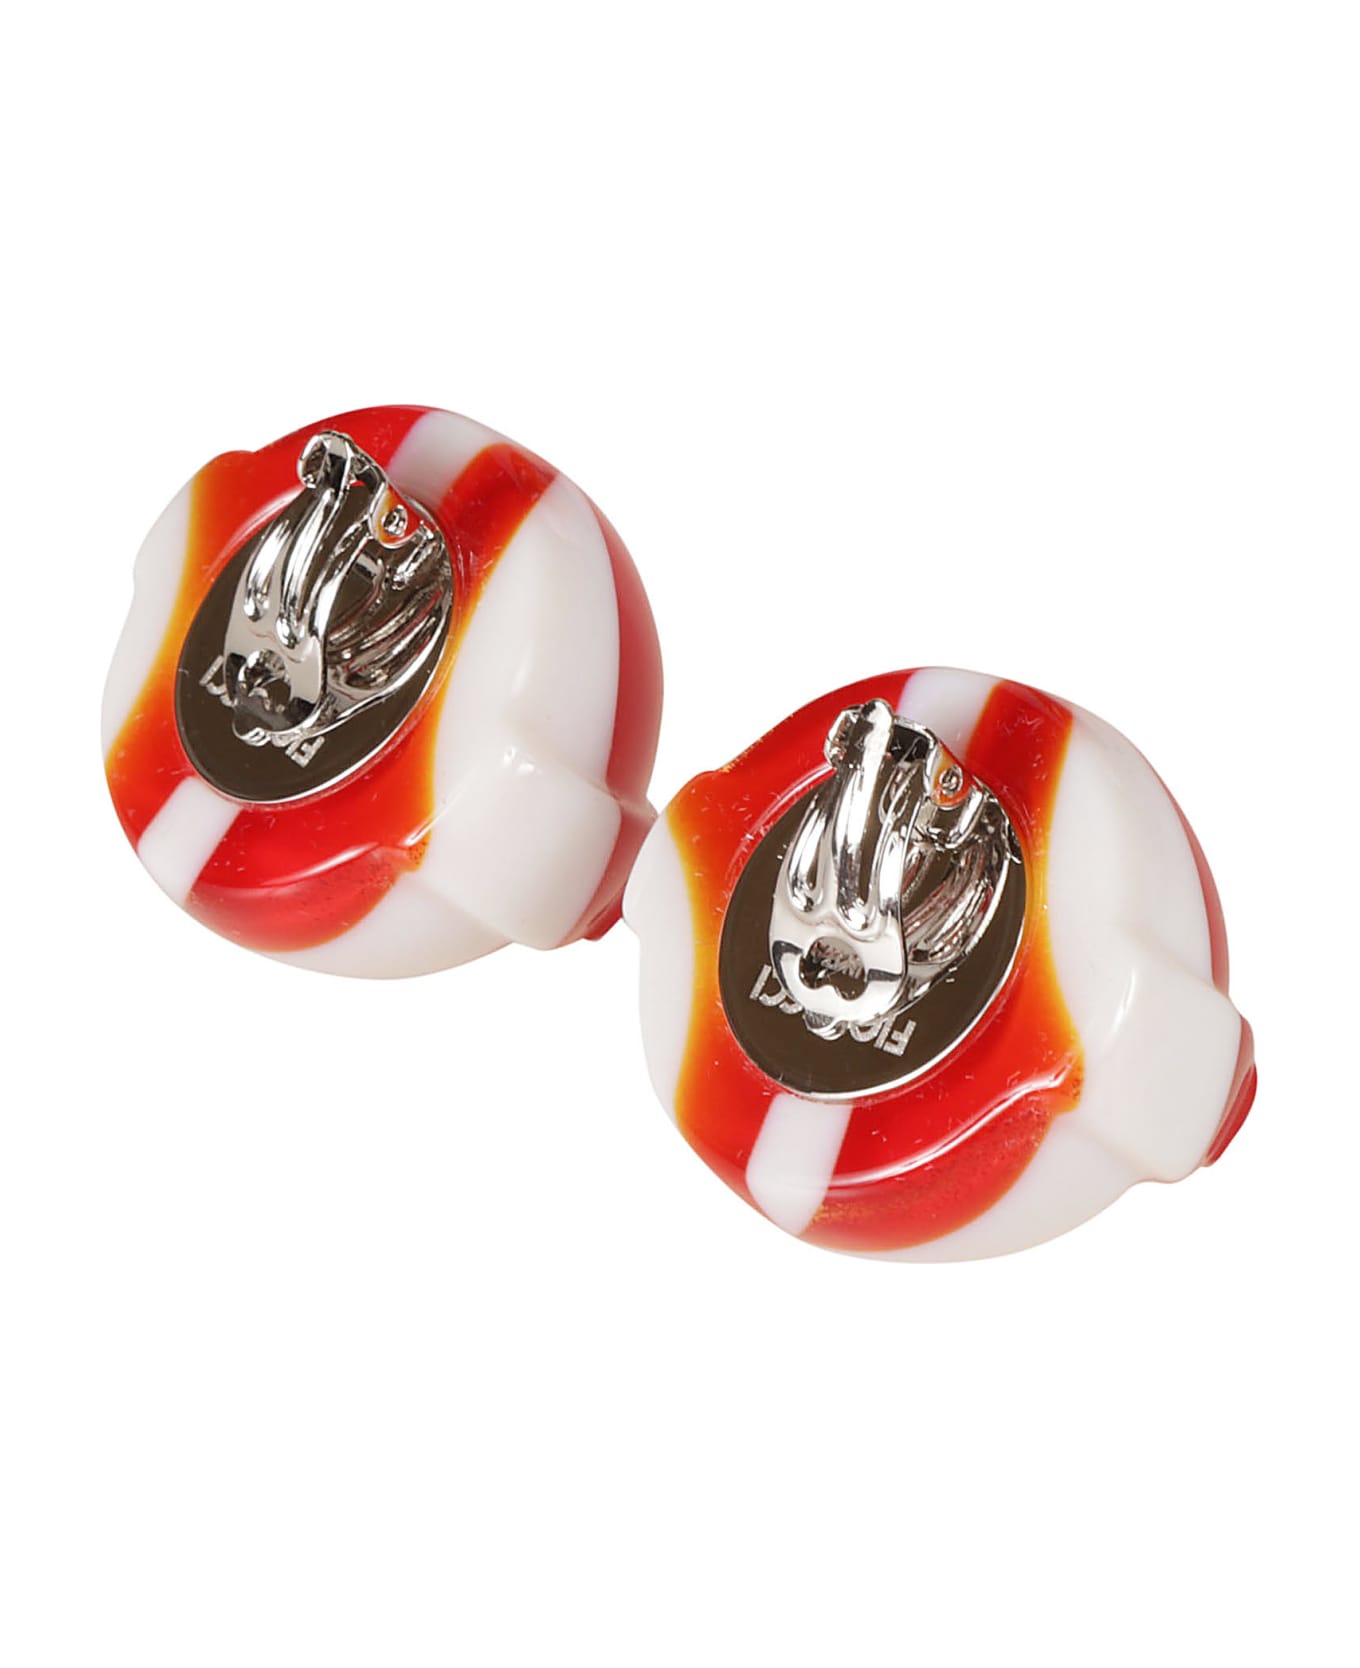 Fiorucci Lollipop Earrings - Red/White イヤリング